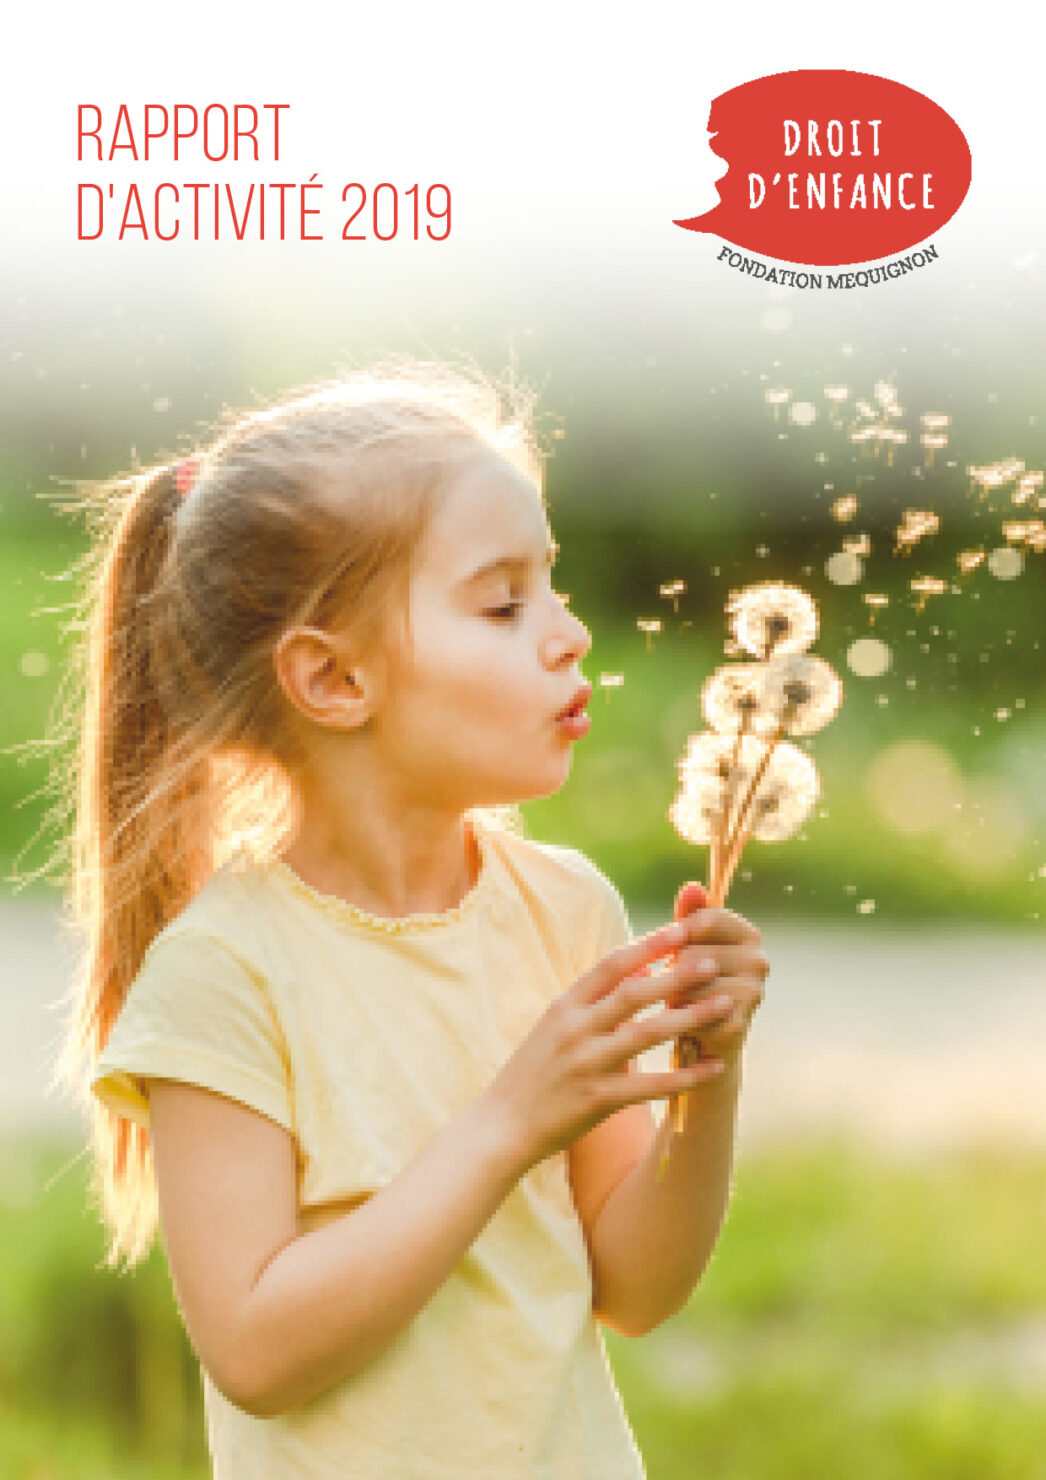 Droit d'Enfance Rapport d'activites 2019